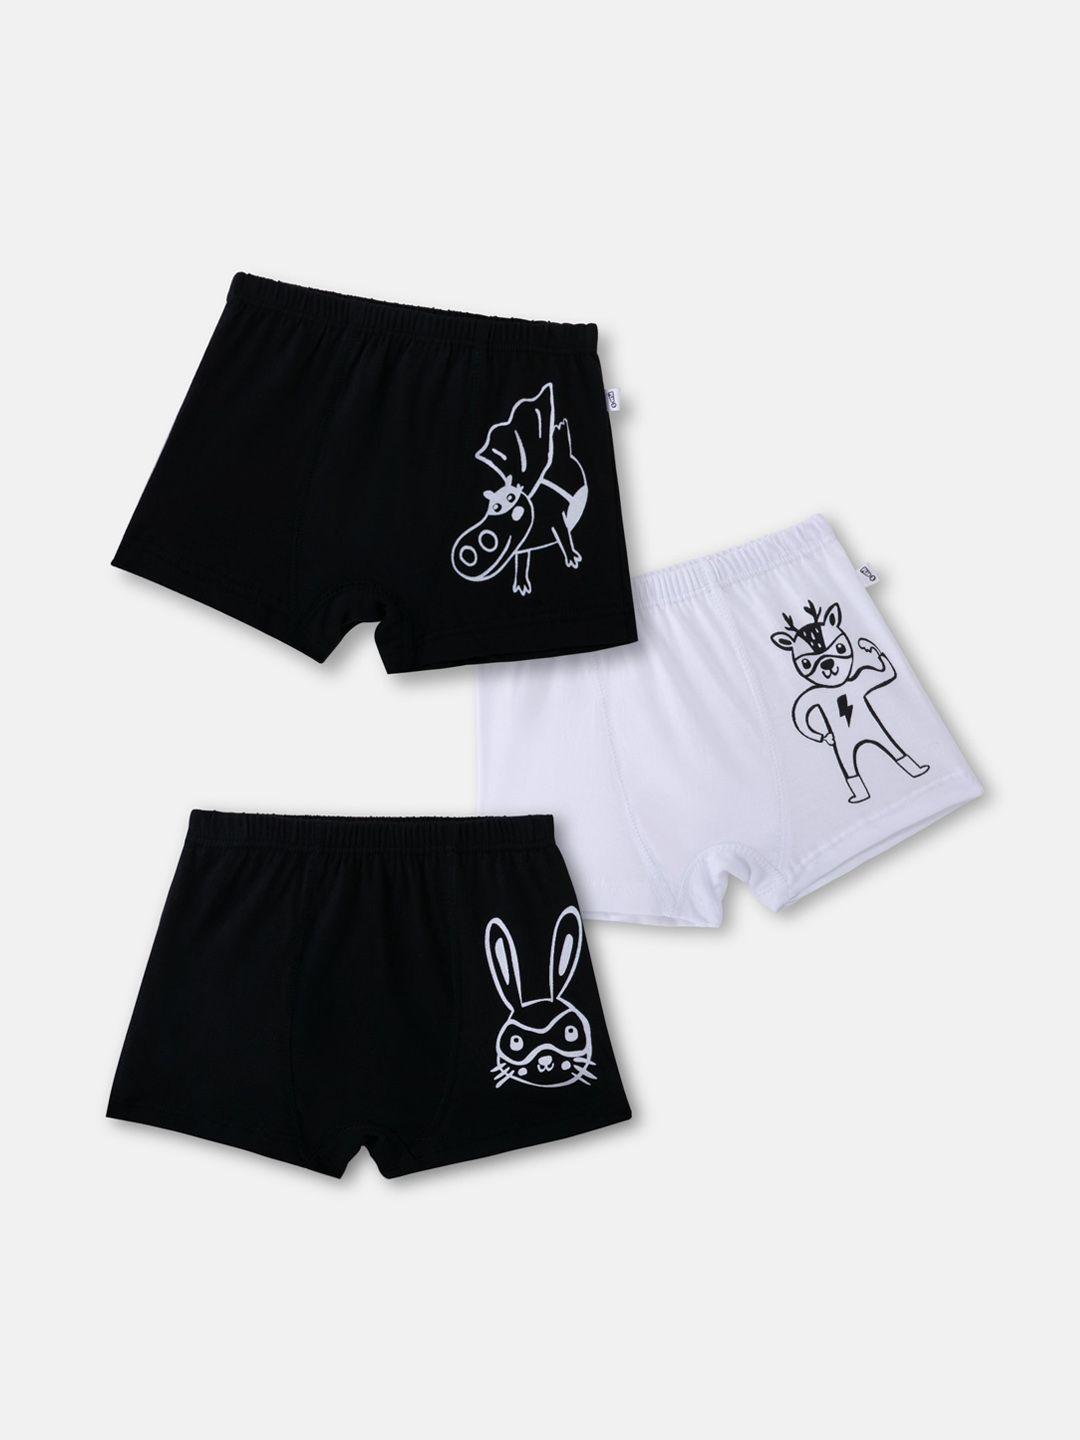 you got plan b boys set of 3 black & white printed anti microbial cotton boxers